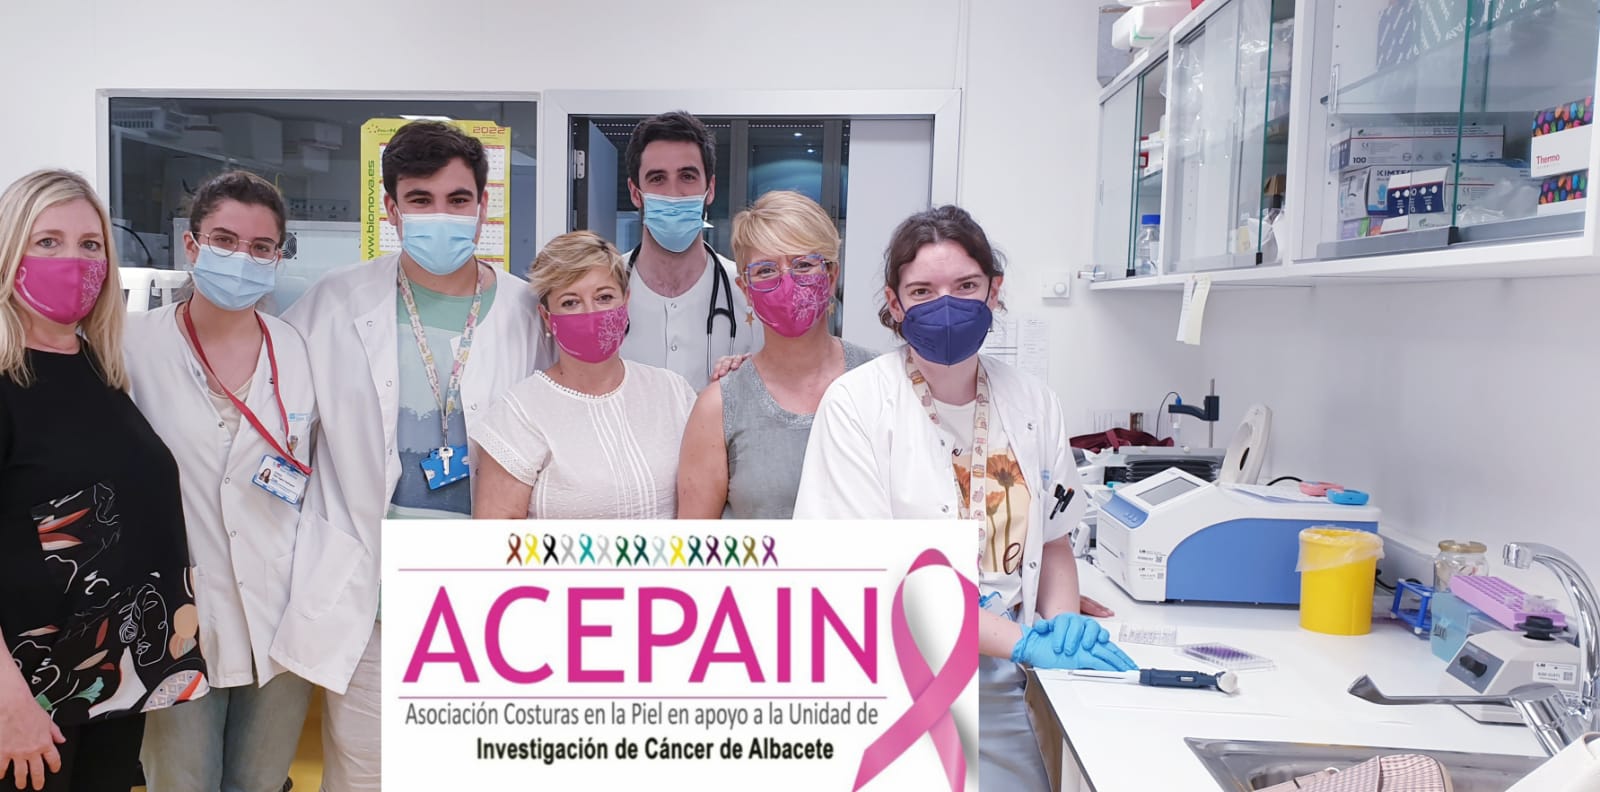 Visita al laboratorio del Dr. Alberto Ocaña en el Hospital Clínico San Carlos de Madrid